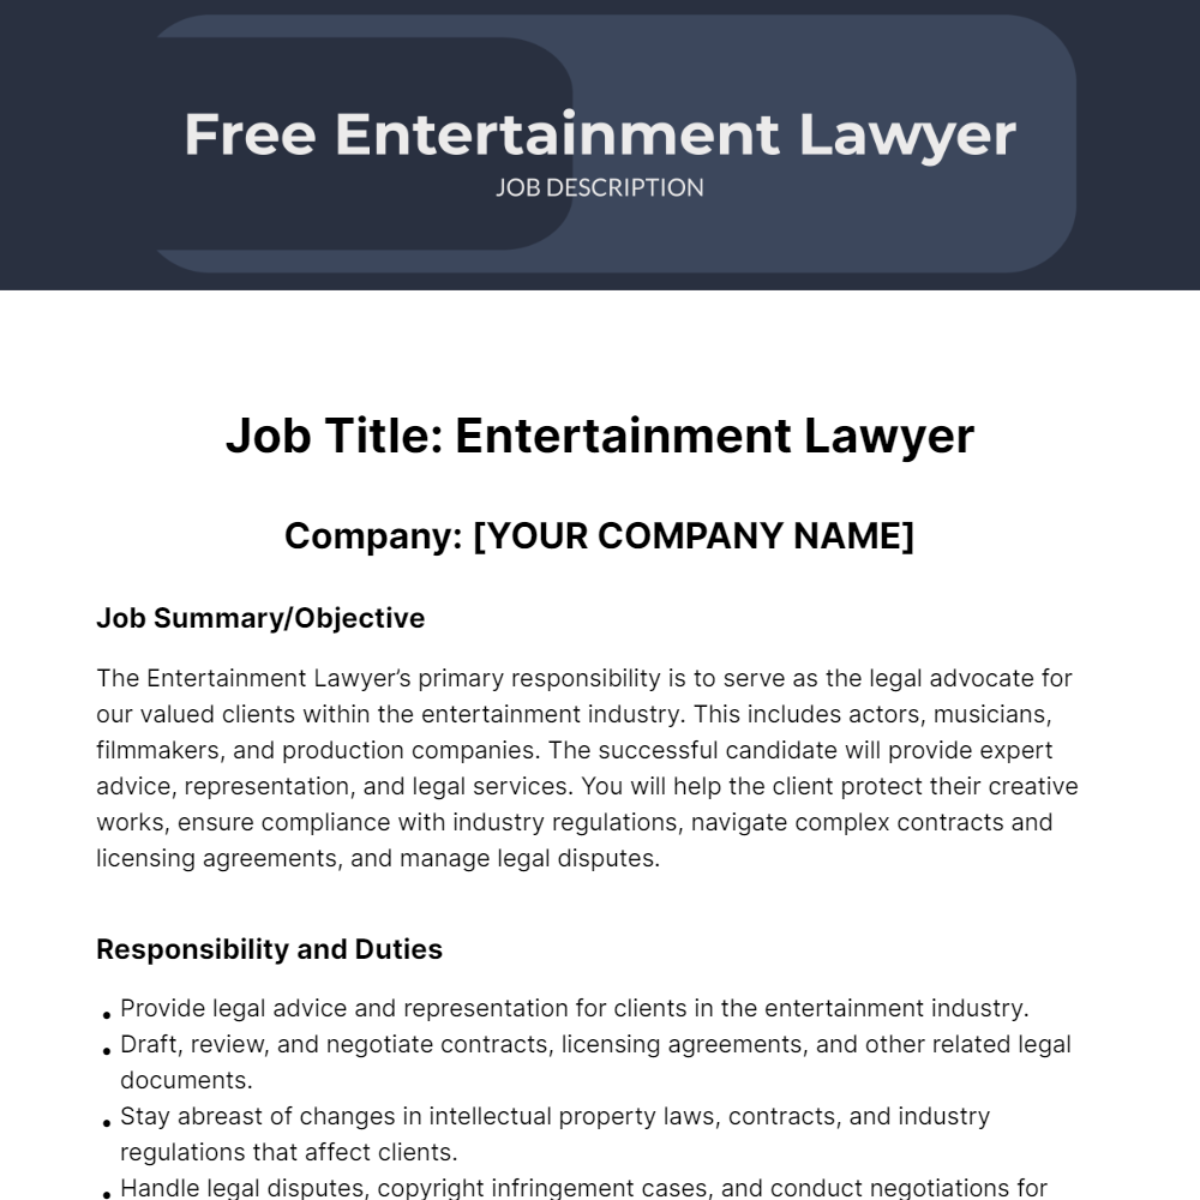 Free Entertainment Lawyer Job Description Template